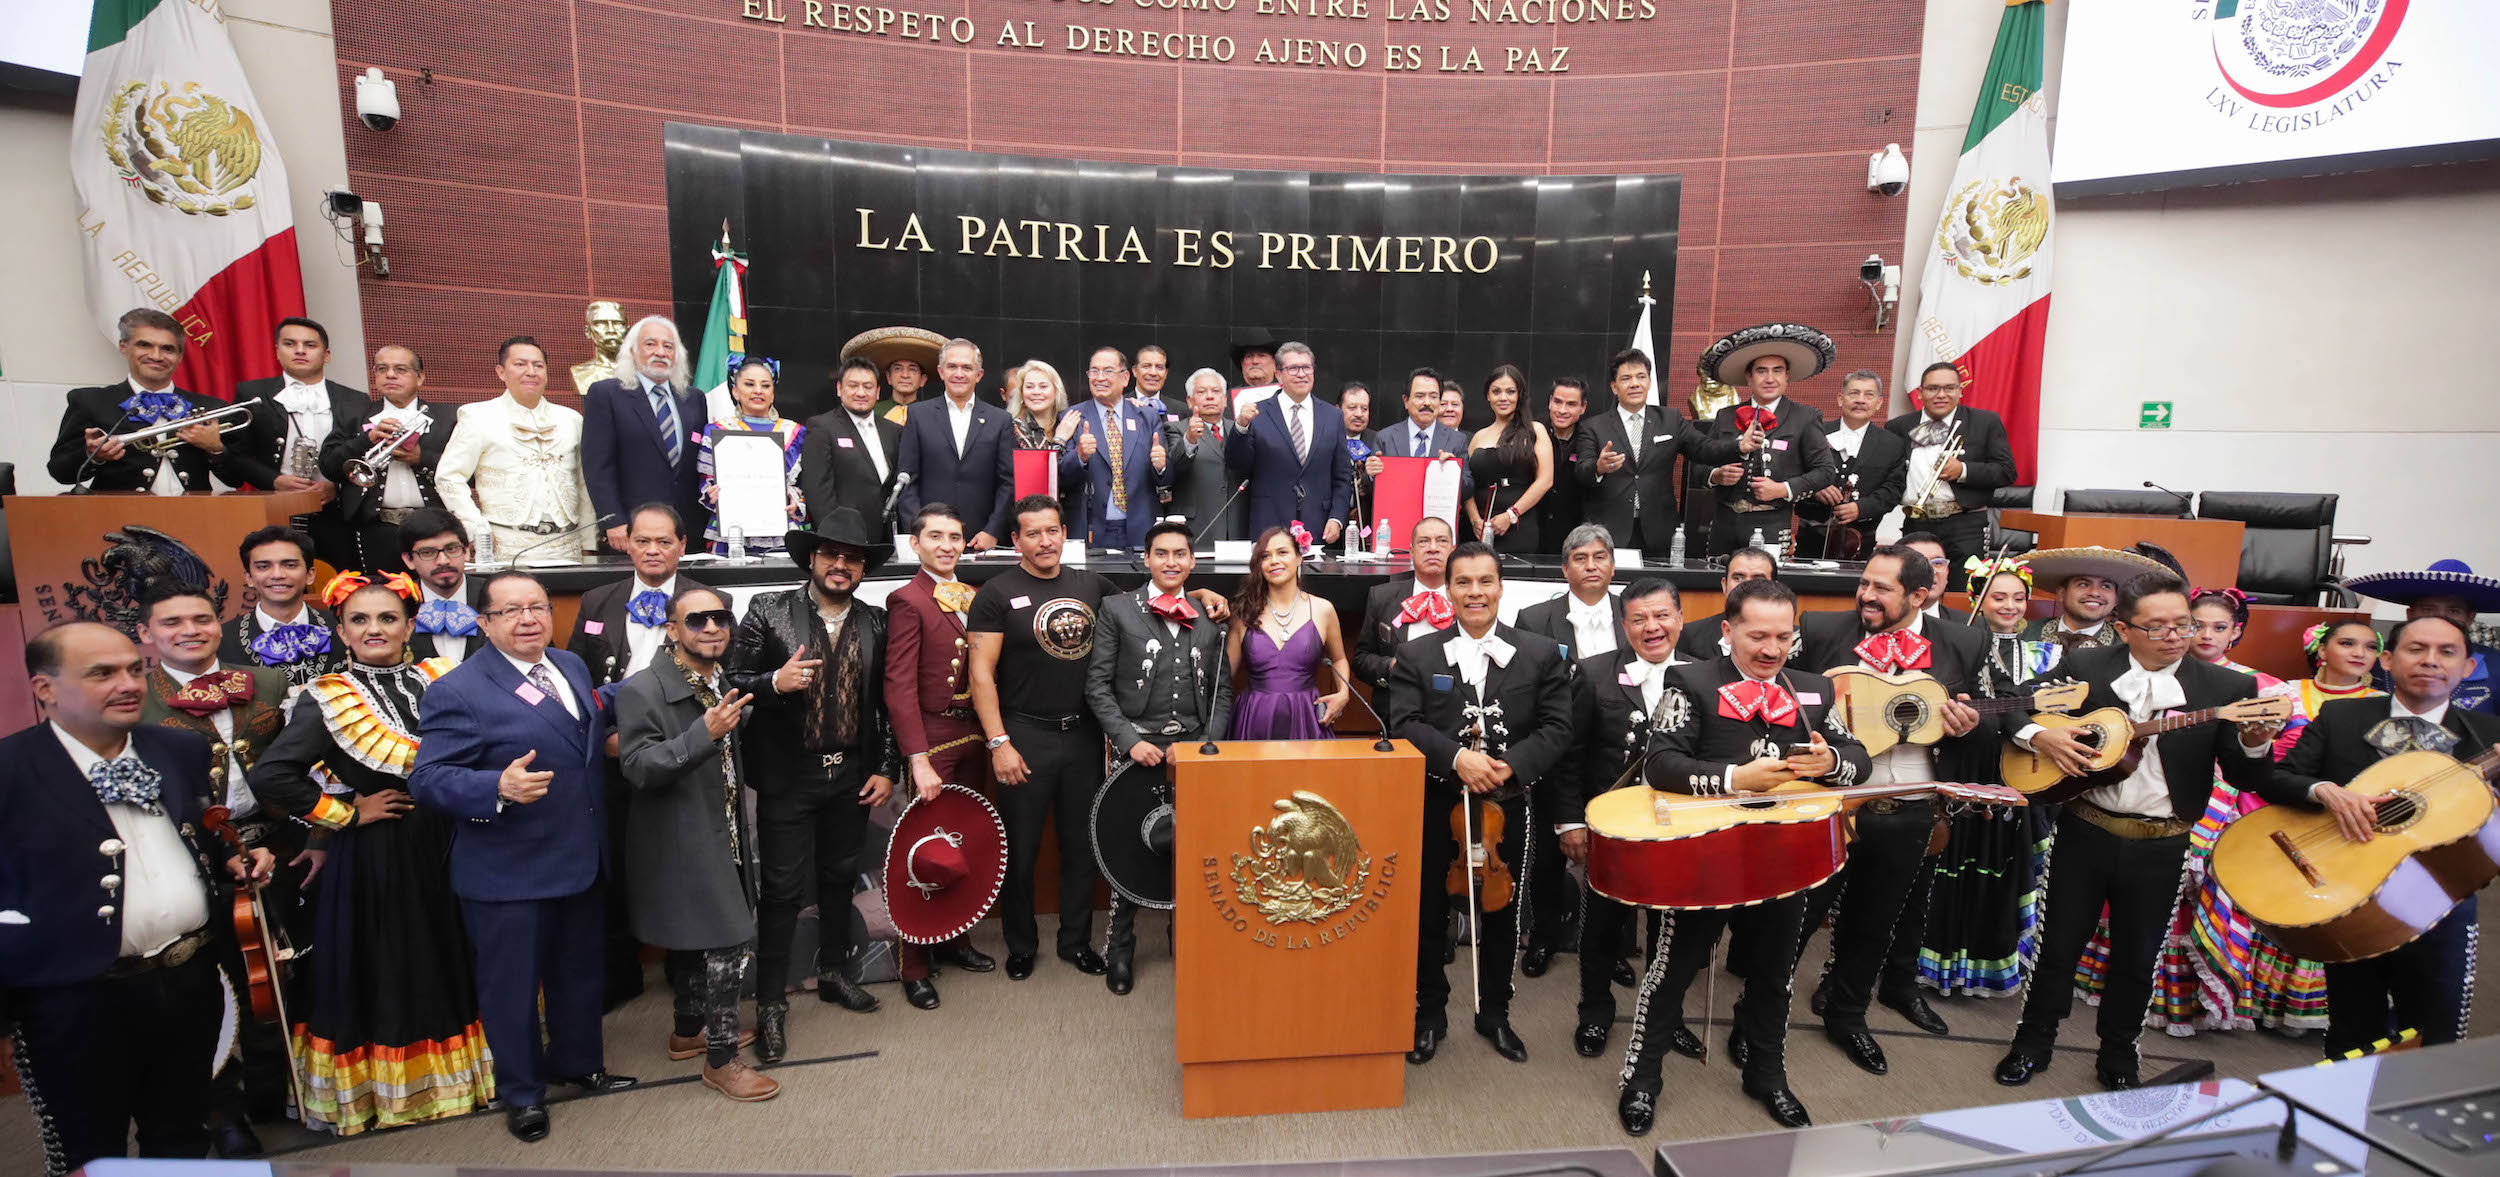 La Cámara de Senadores reconoció la trayectoria artística de diferentes músicos mexicanos (Foto: Senado de la República)